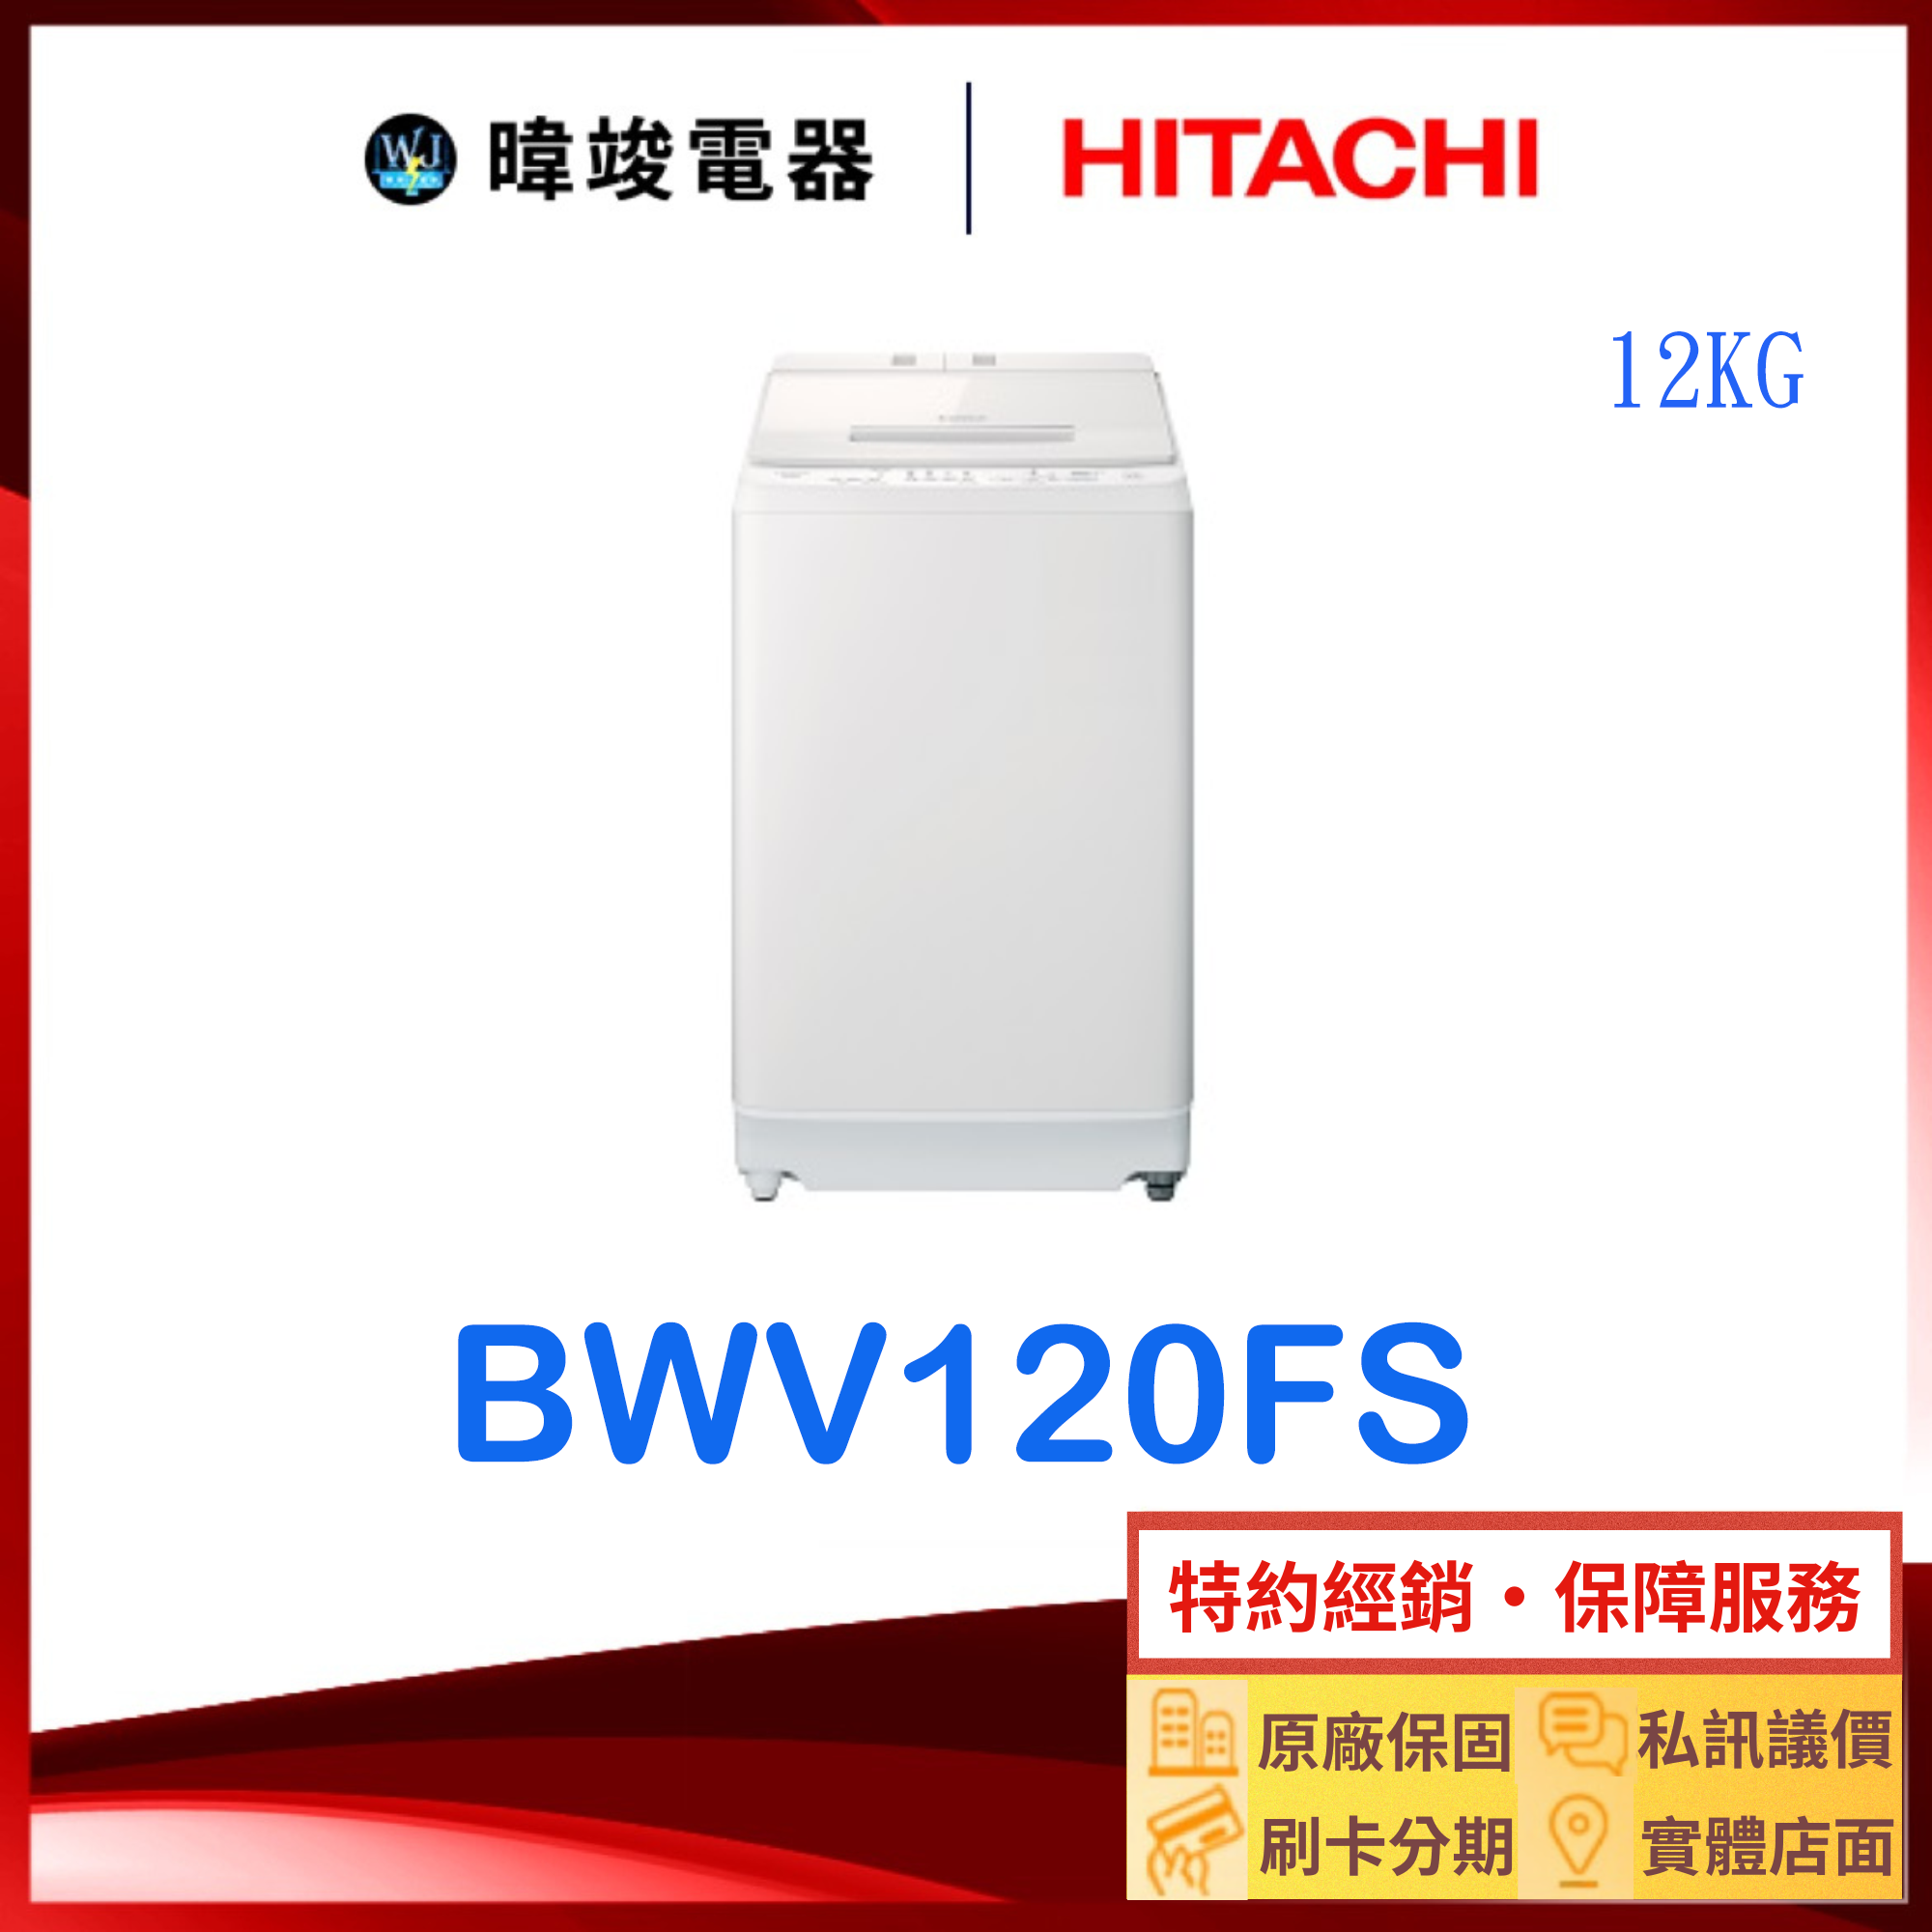 【獨家折扣碼】HITACHI 日立 BW-V120FS 12kg 洗衣機 BWV120FS 洗衣機 原廠保固